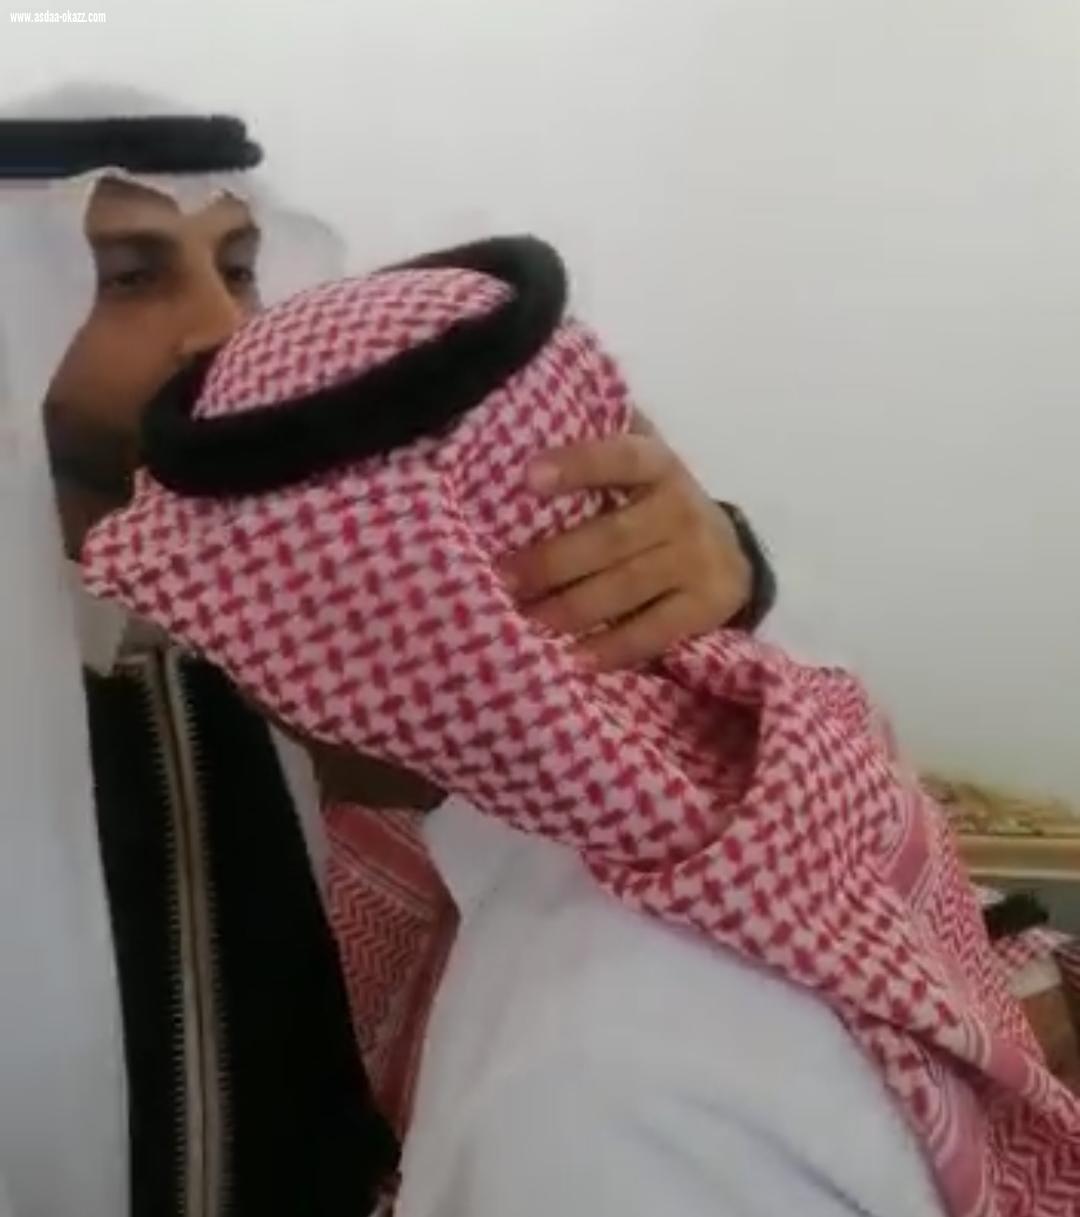 عبدالله بن علي محمد ظافري يحتفل بعقد قرانه بحي النور بمكة المكرمة